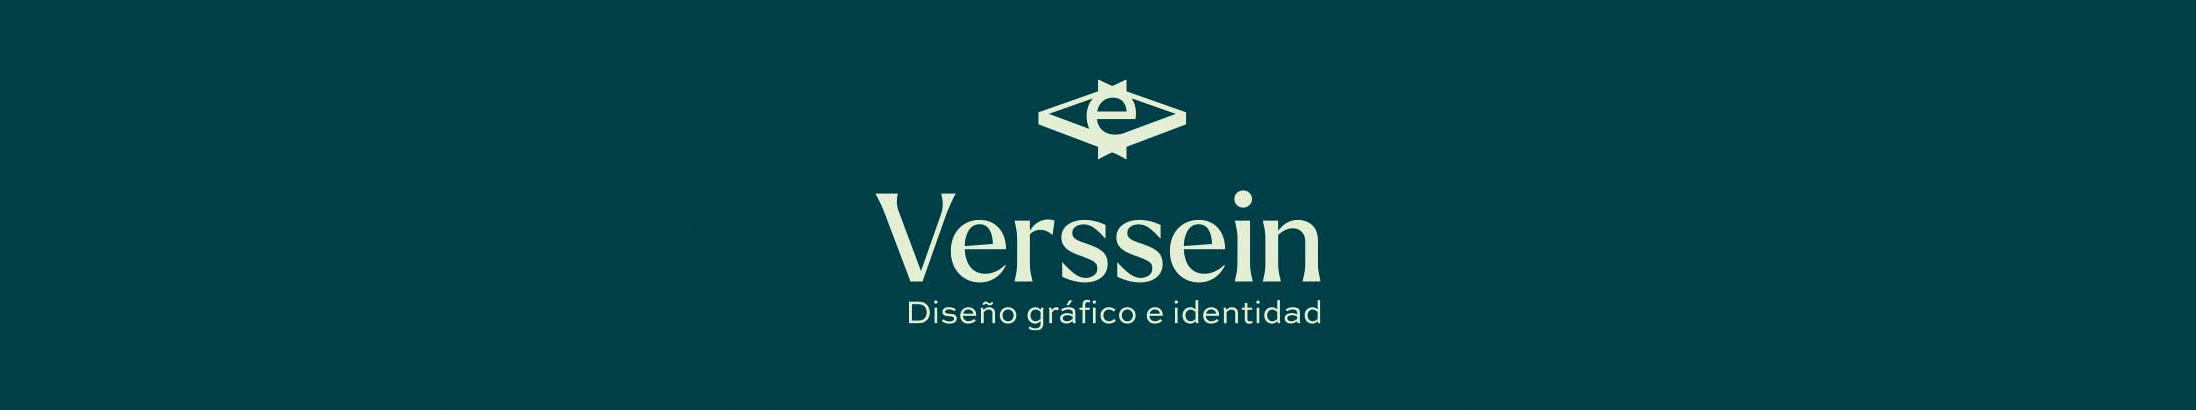 Verssein Studio's profile banner